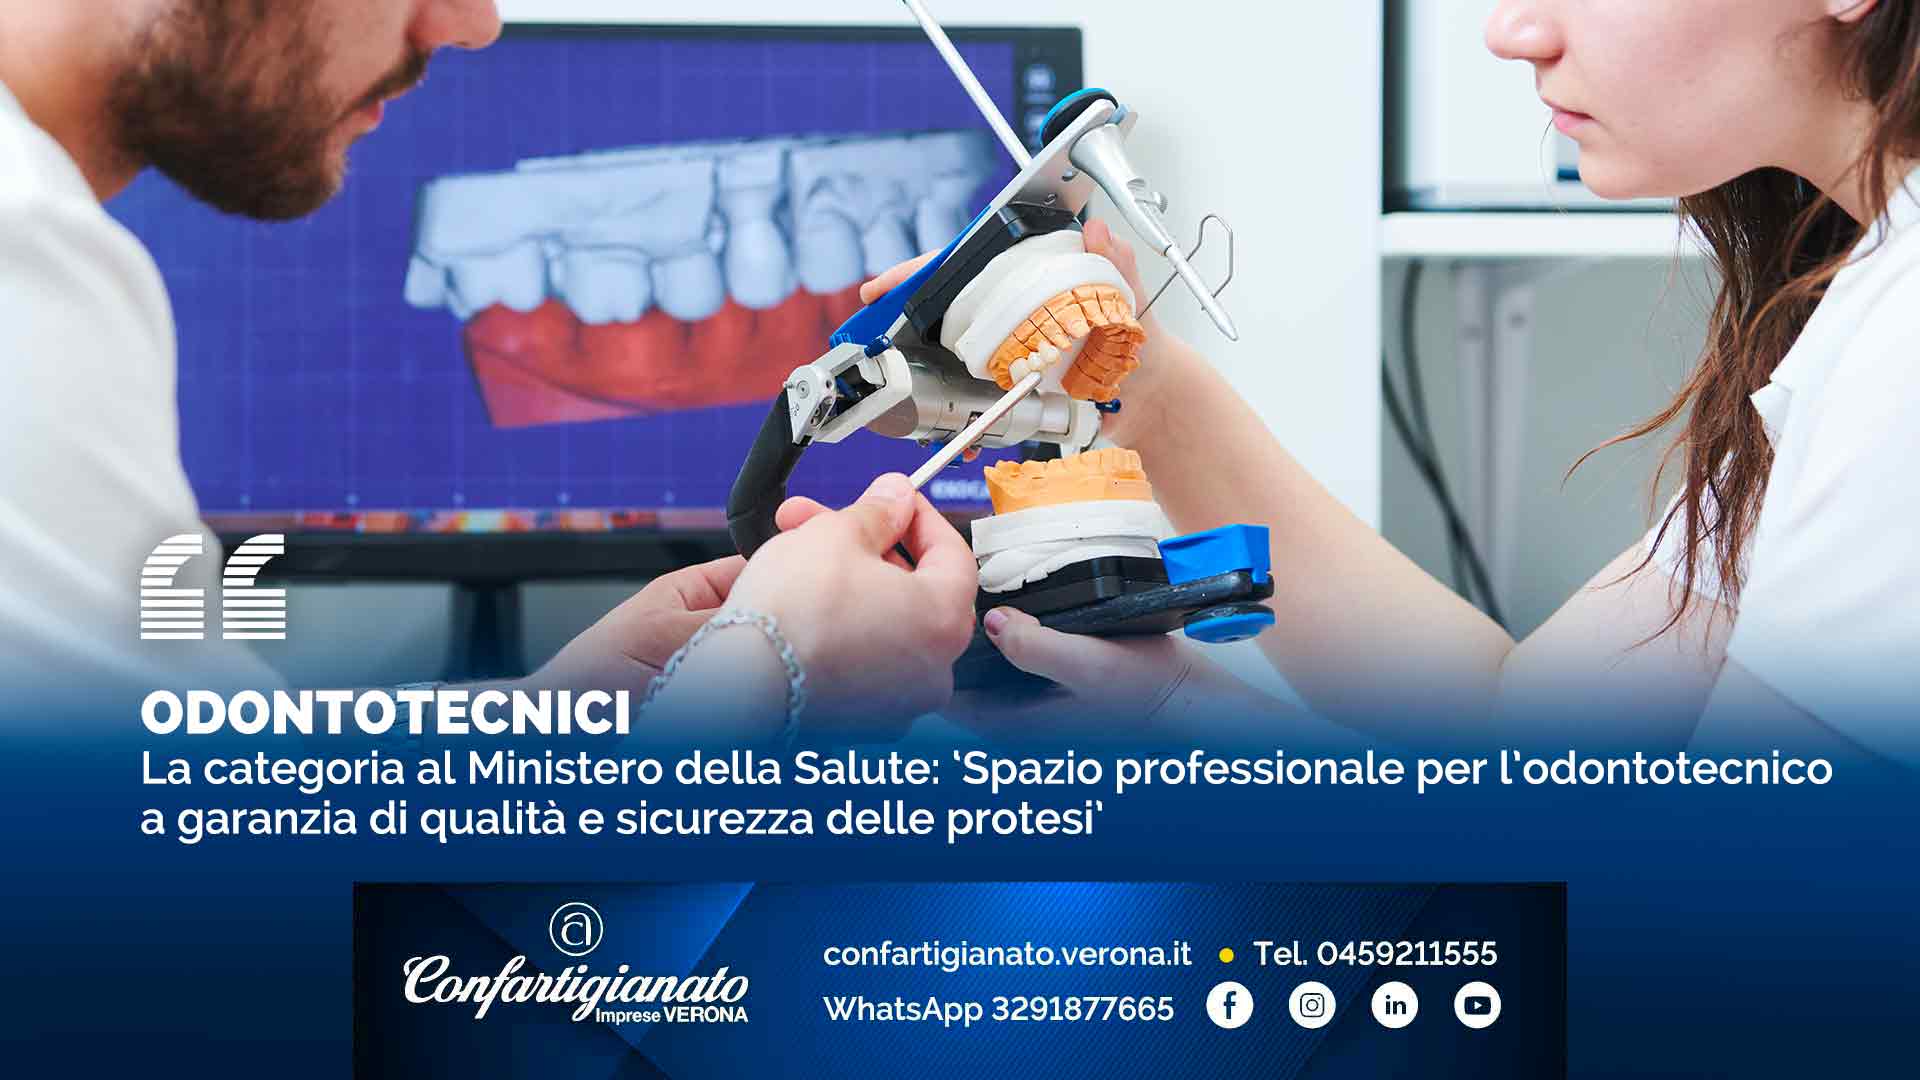 ODONTOTECNICI – La categoria al Ministero della Salute: ‘Spazio professionale per l’odontotecnico a garanzia di qualità e sicurezza delle protesi’